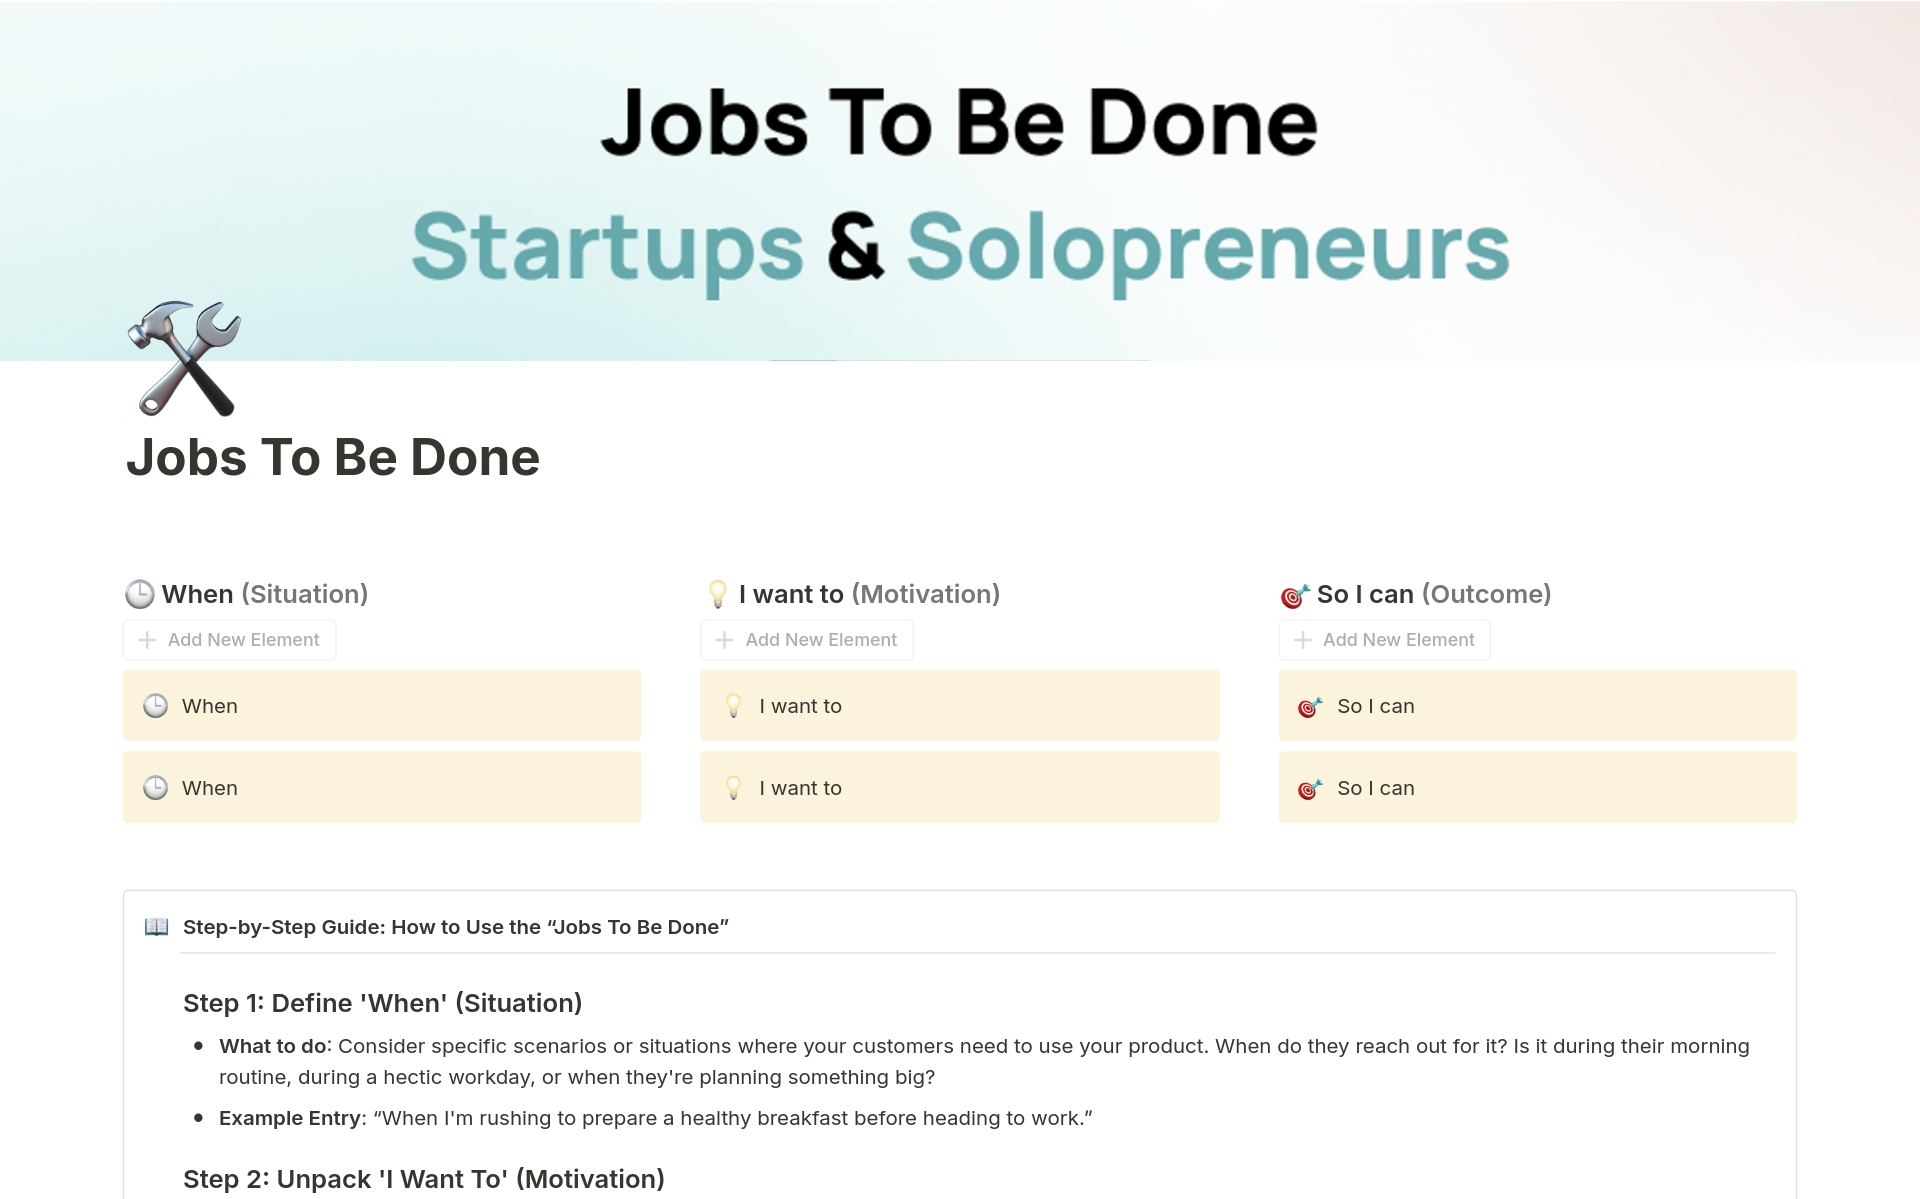 Uma prévia do modelo para Jobs To Be Done for Startups & Solopreneurs